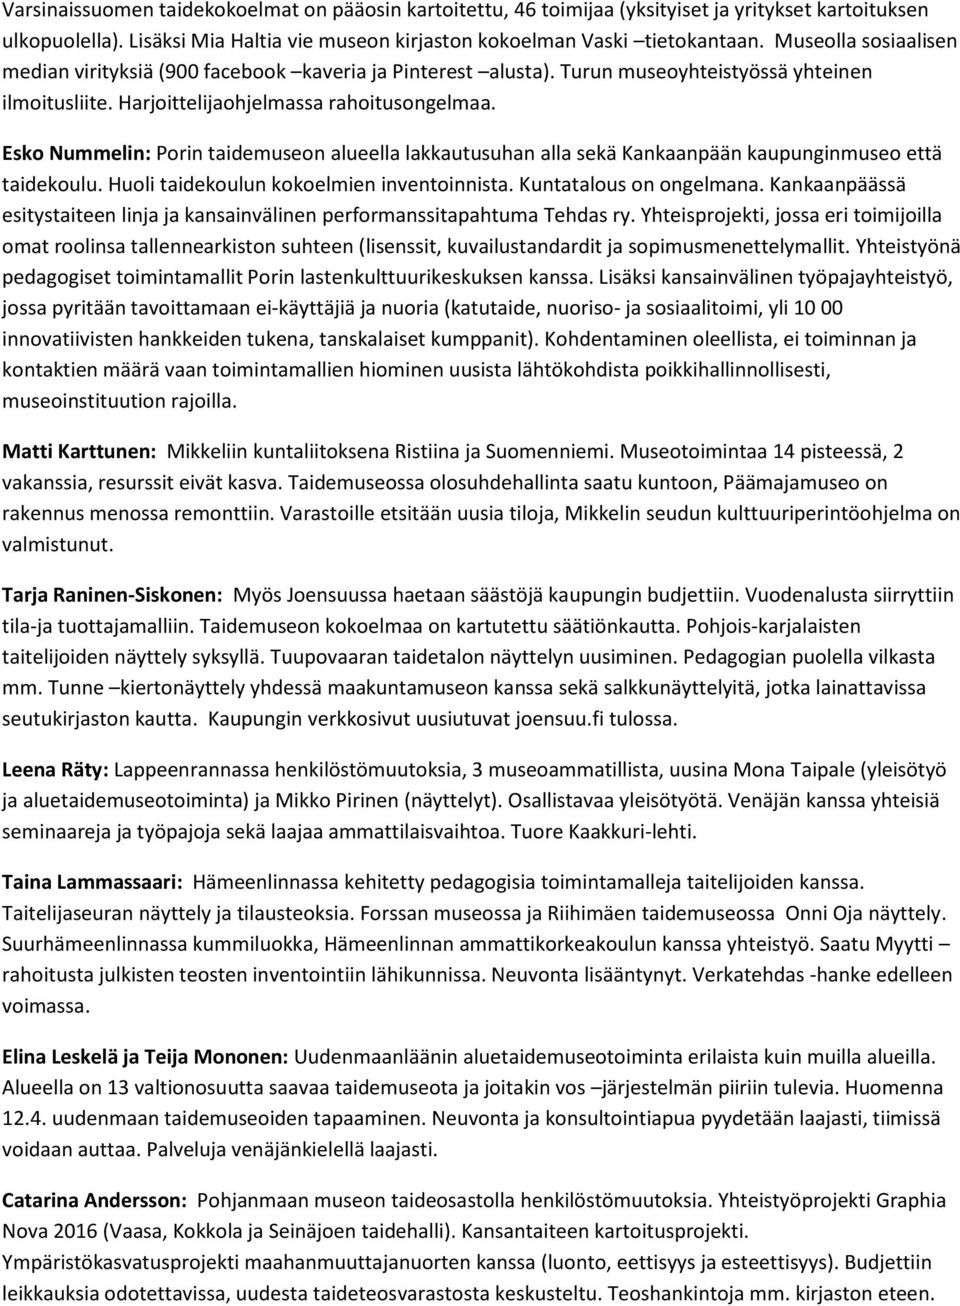 Esko Nummelin: Porin taidemuseon alueella lakkautusuhan alla sekä Kankaanpään kaupunginmuseo että taidekoulu. Huoli taidekoulun kokoelmien inventoinnista. Kuntatalous on ongelmana.